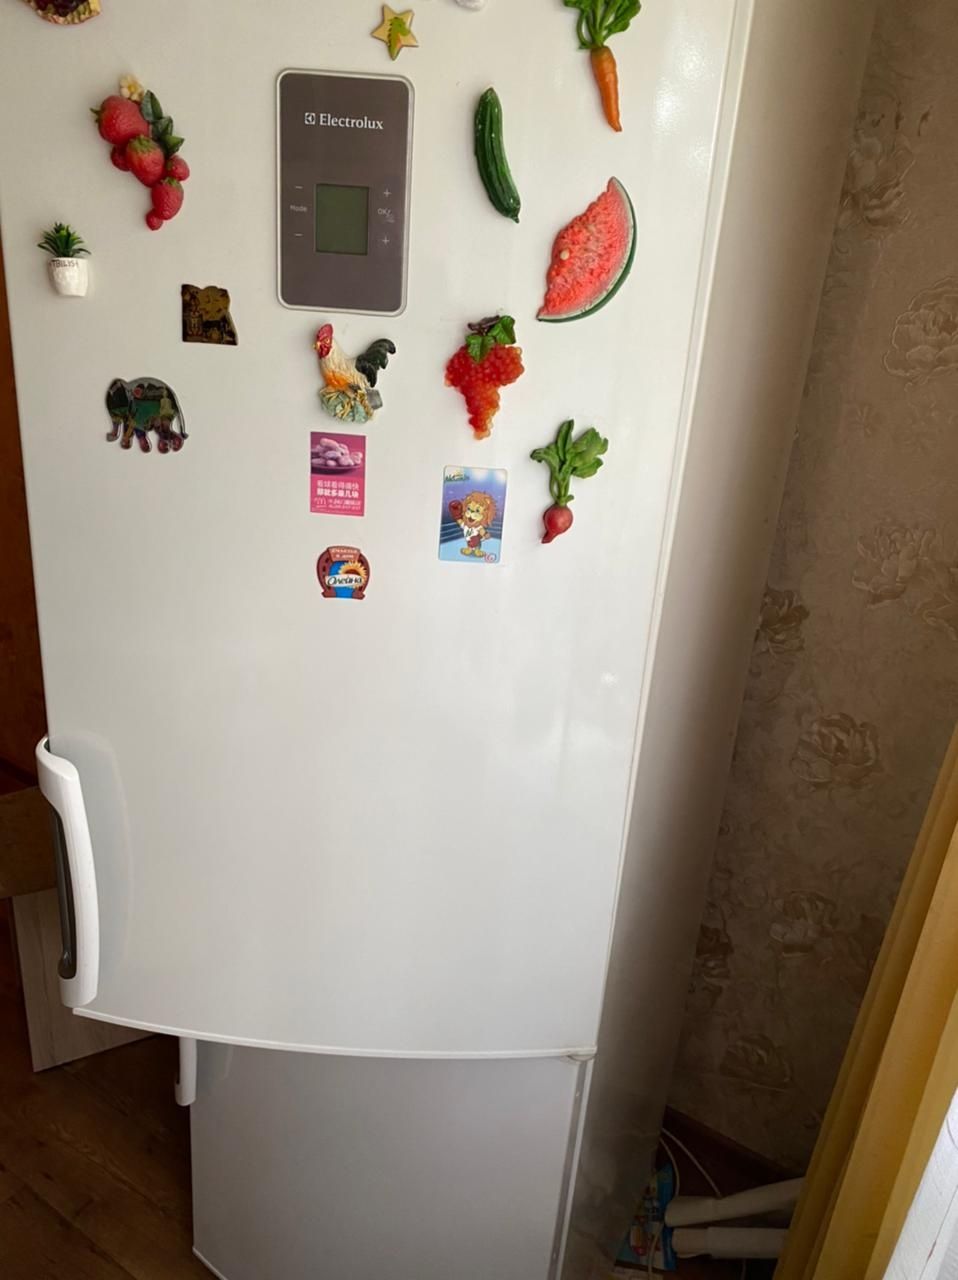 Ремонт холодильников Астана